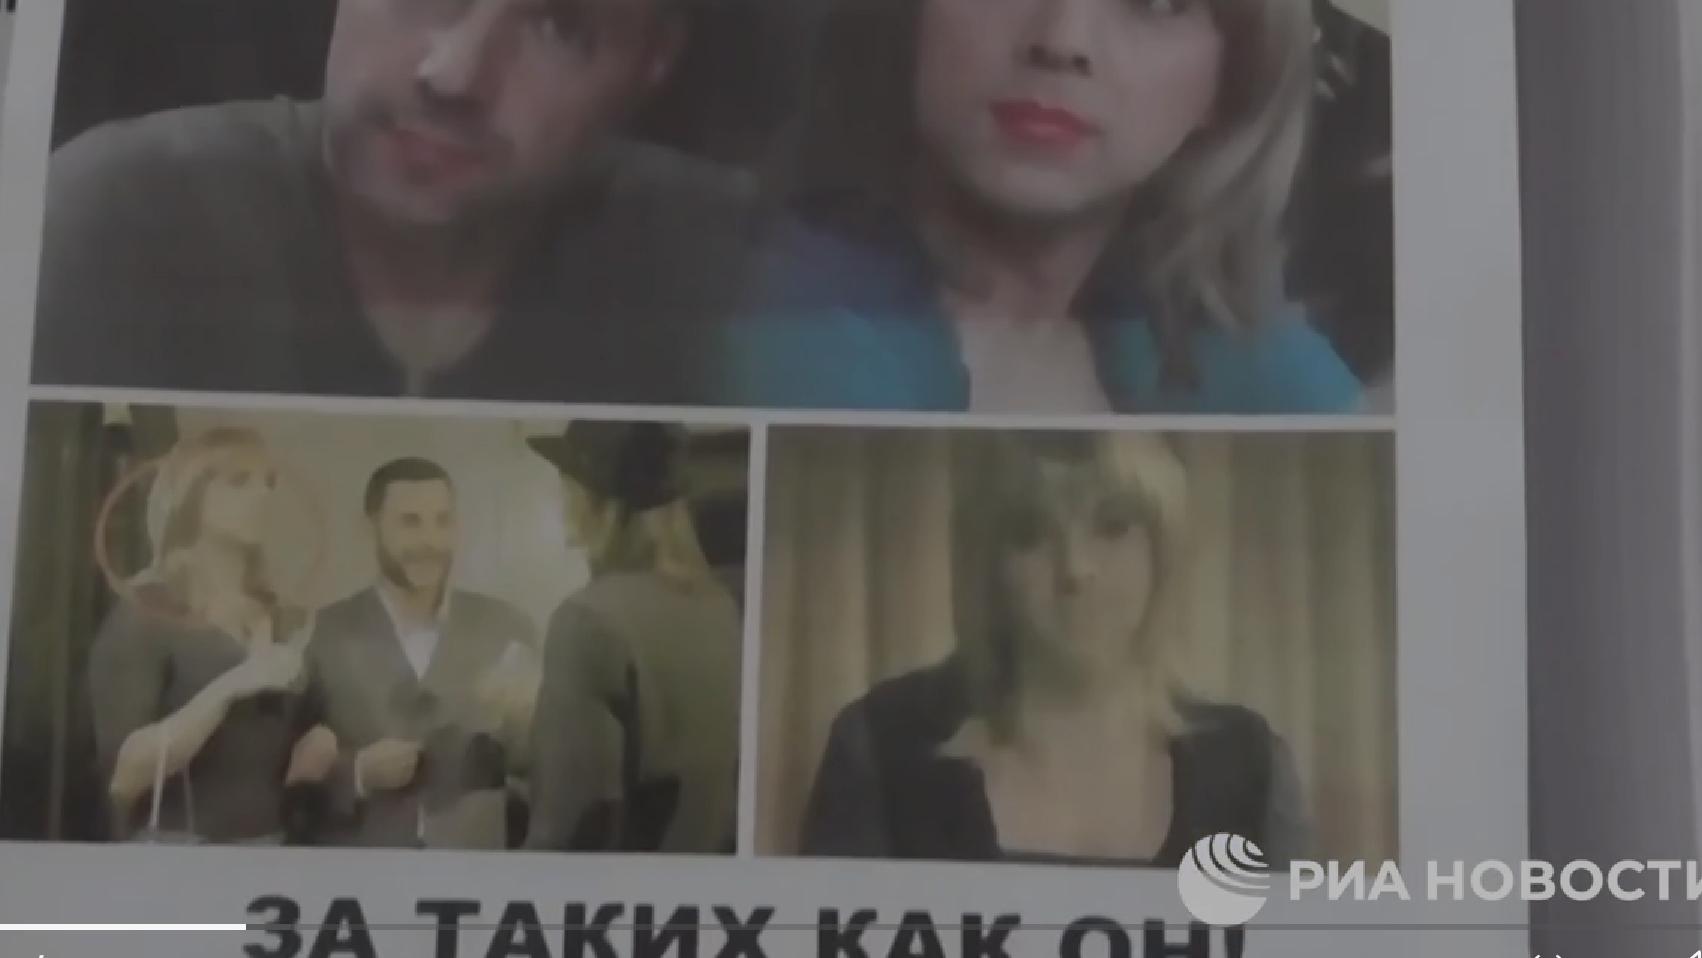 Fragment ulotki, gdzie znany ukraiński polityk pokazany jest w kobiecym przebraniu